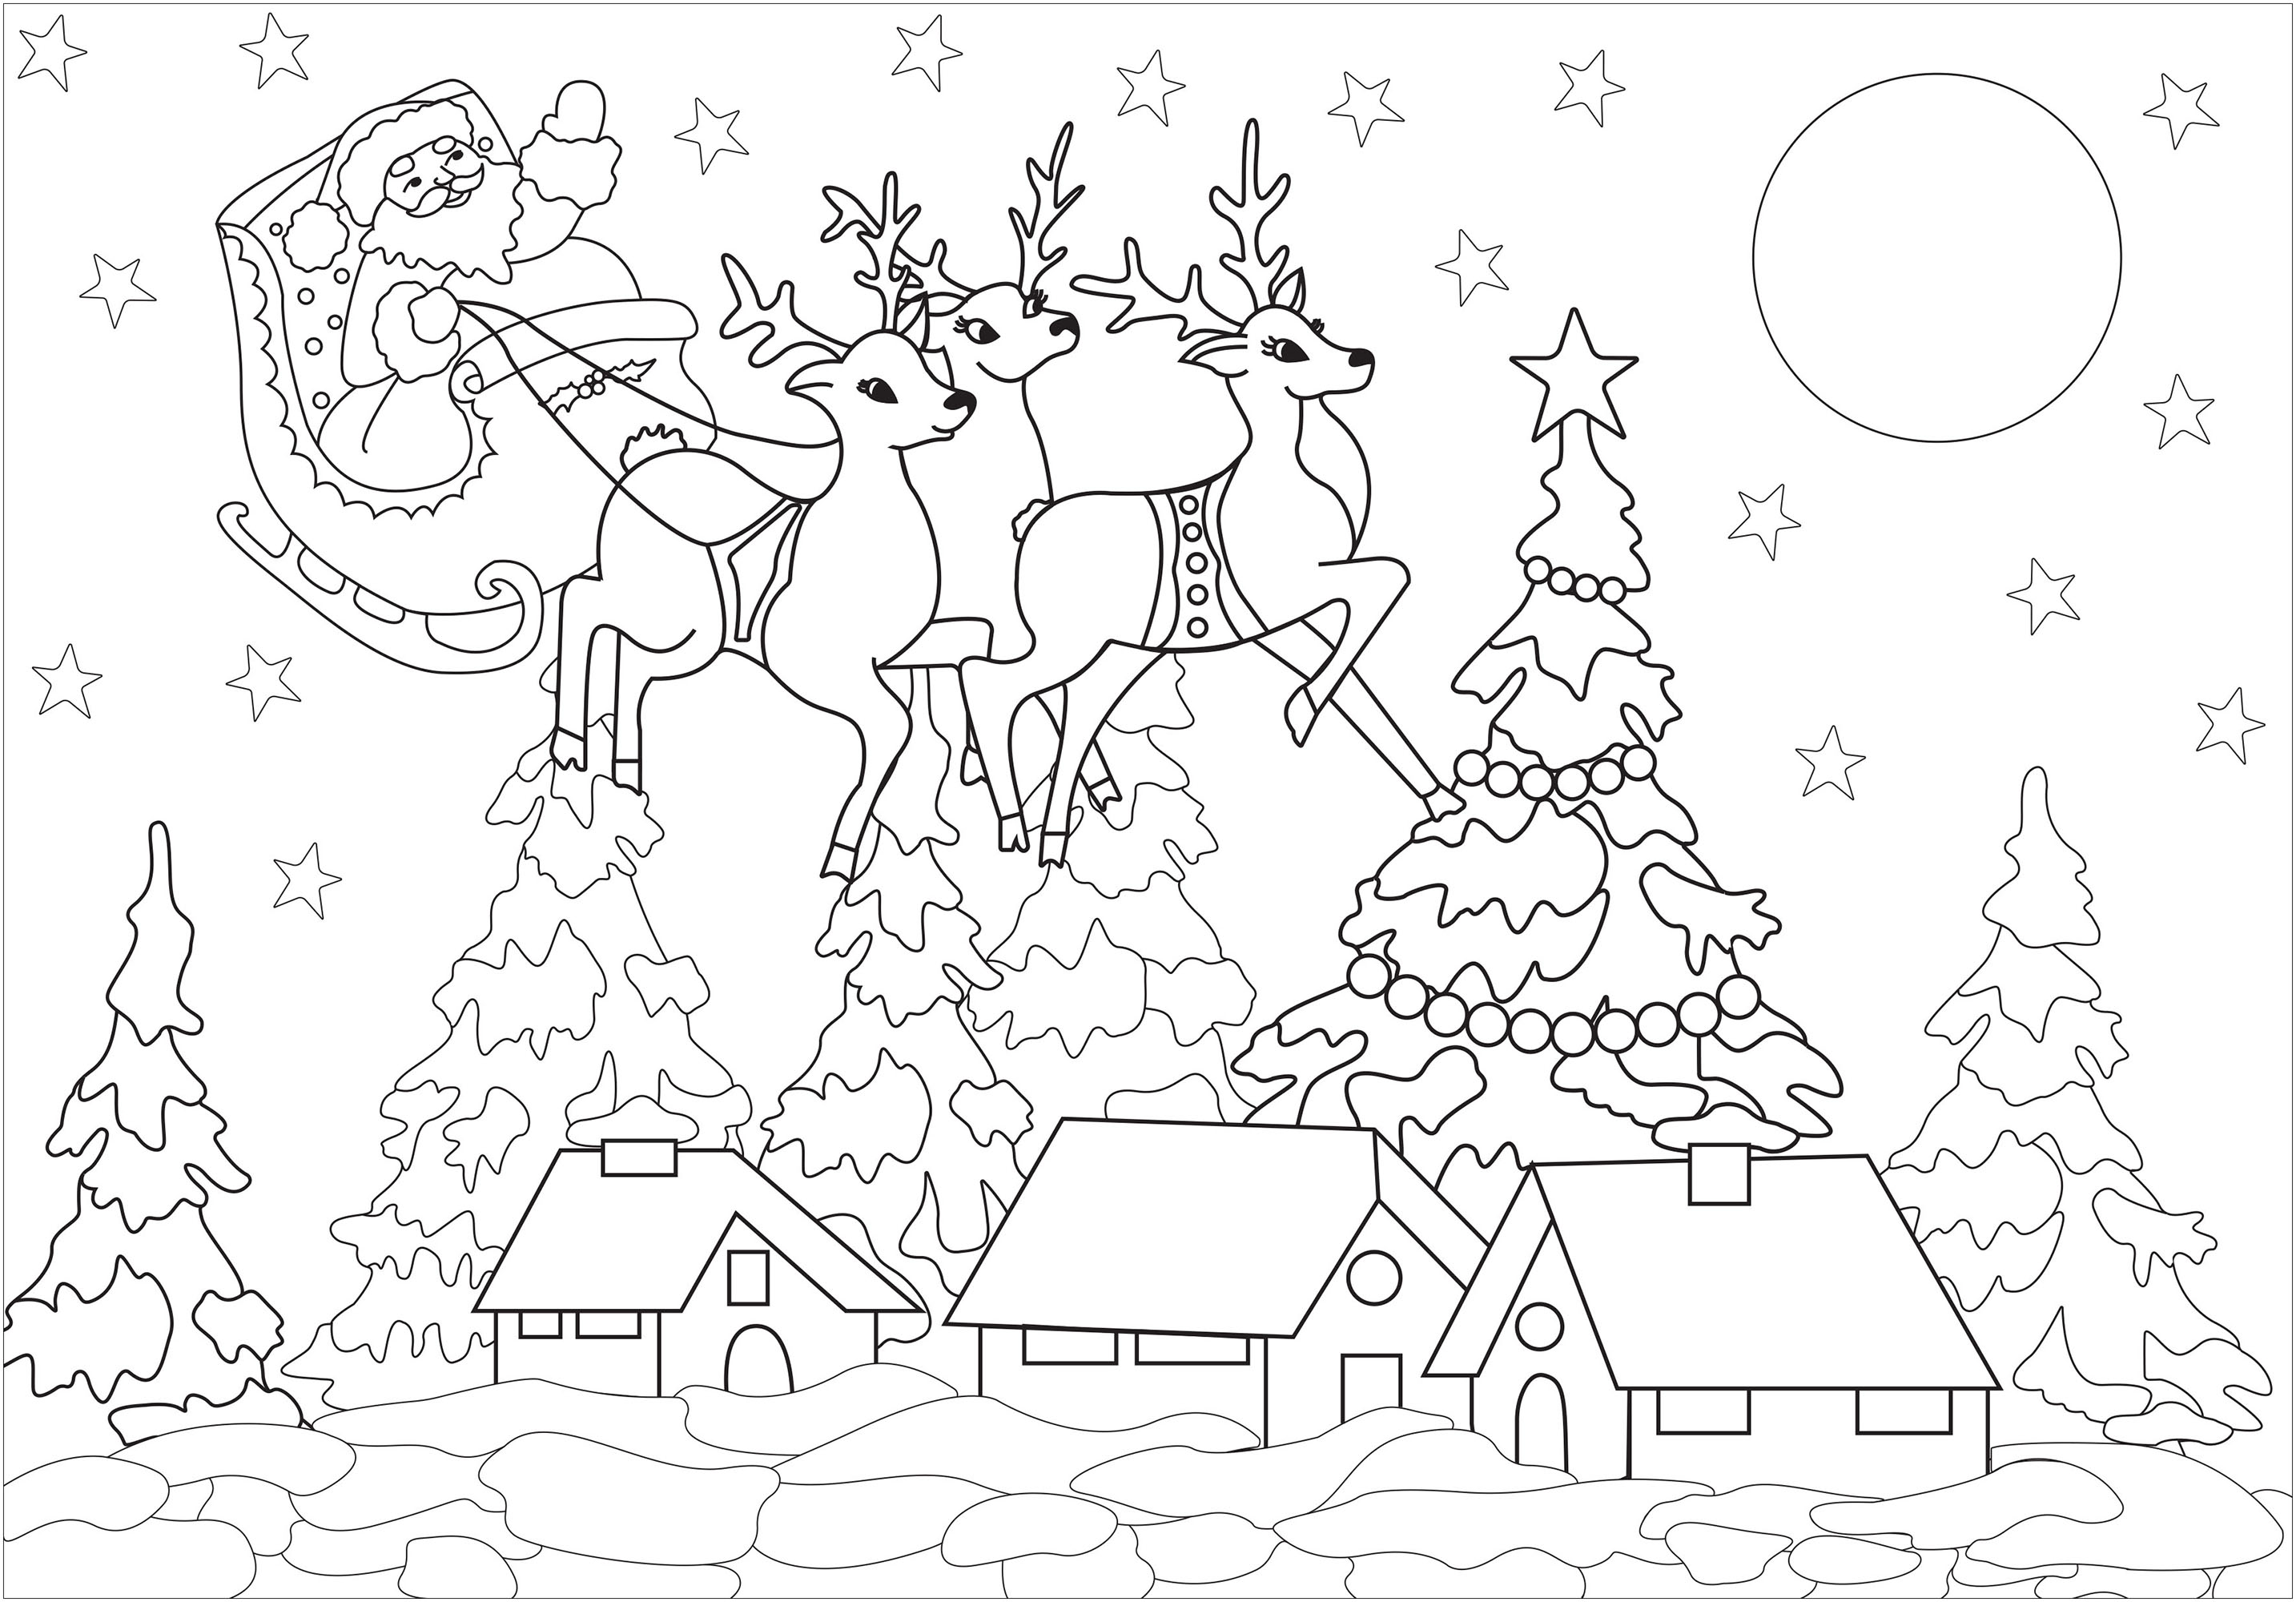 Santa Claus arrives in this pretty snowy village, Artist : Arwen